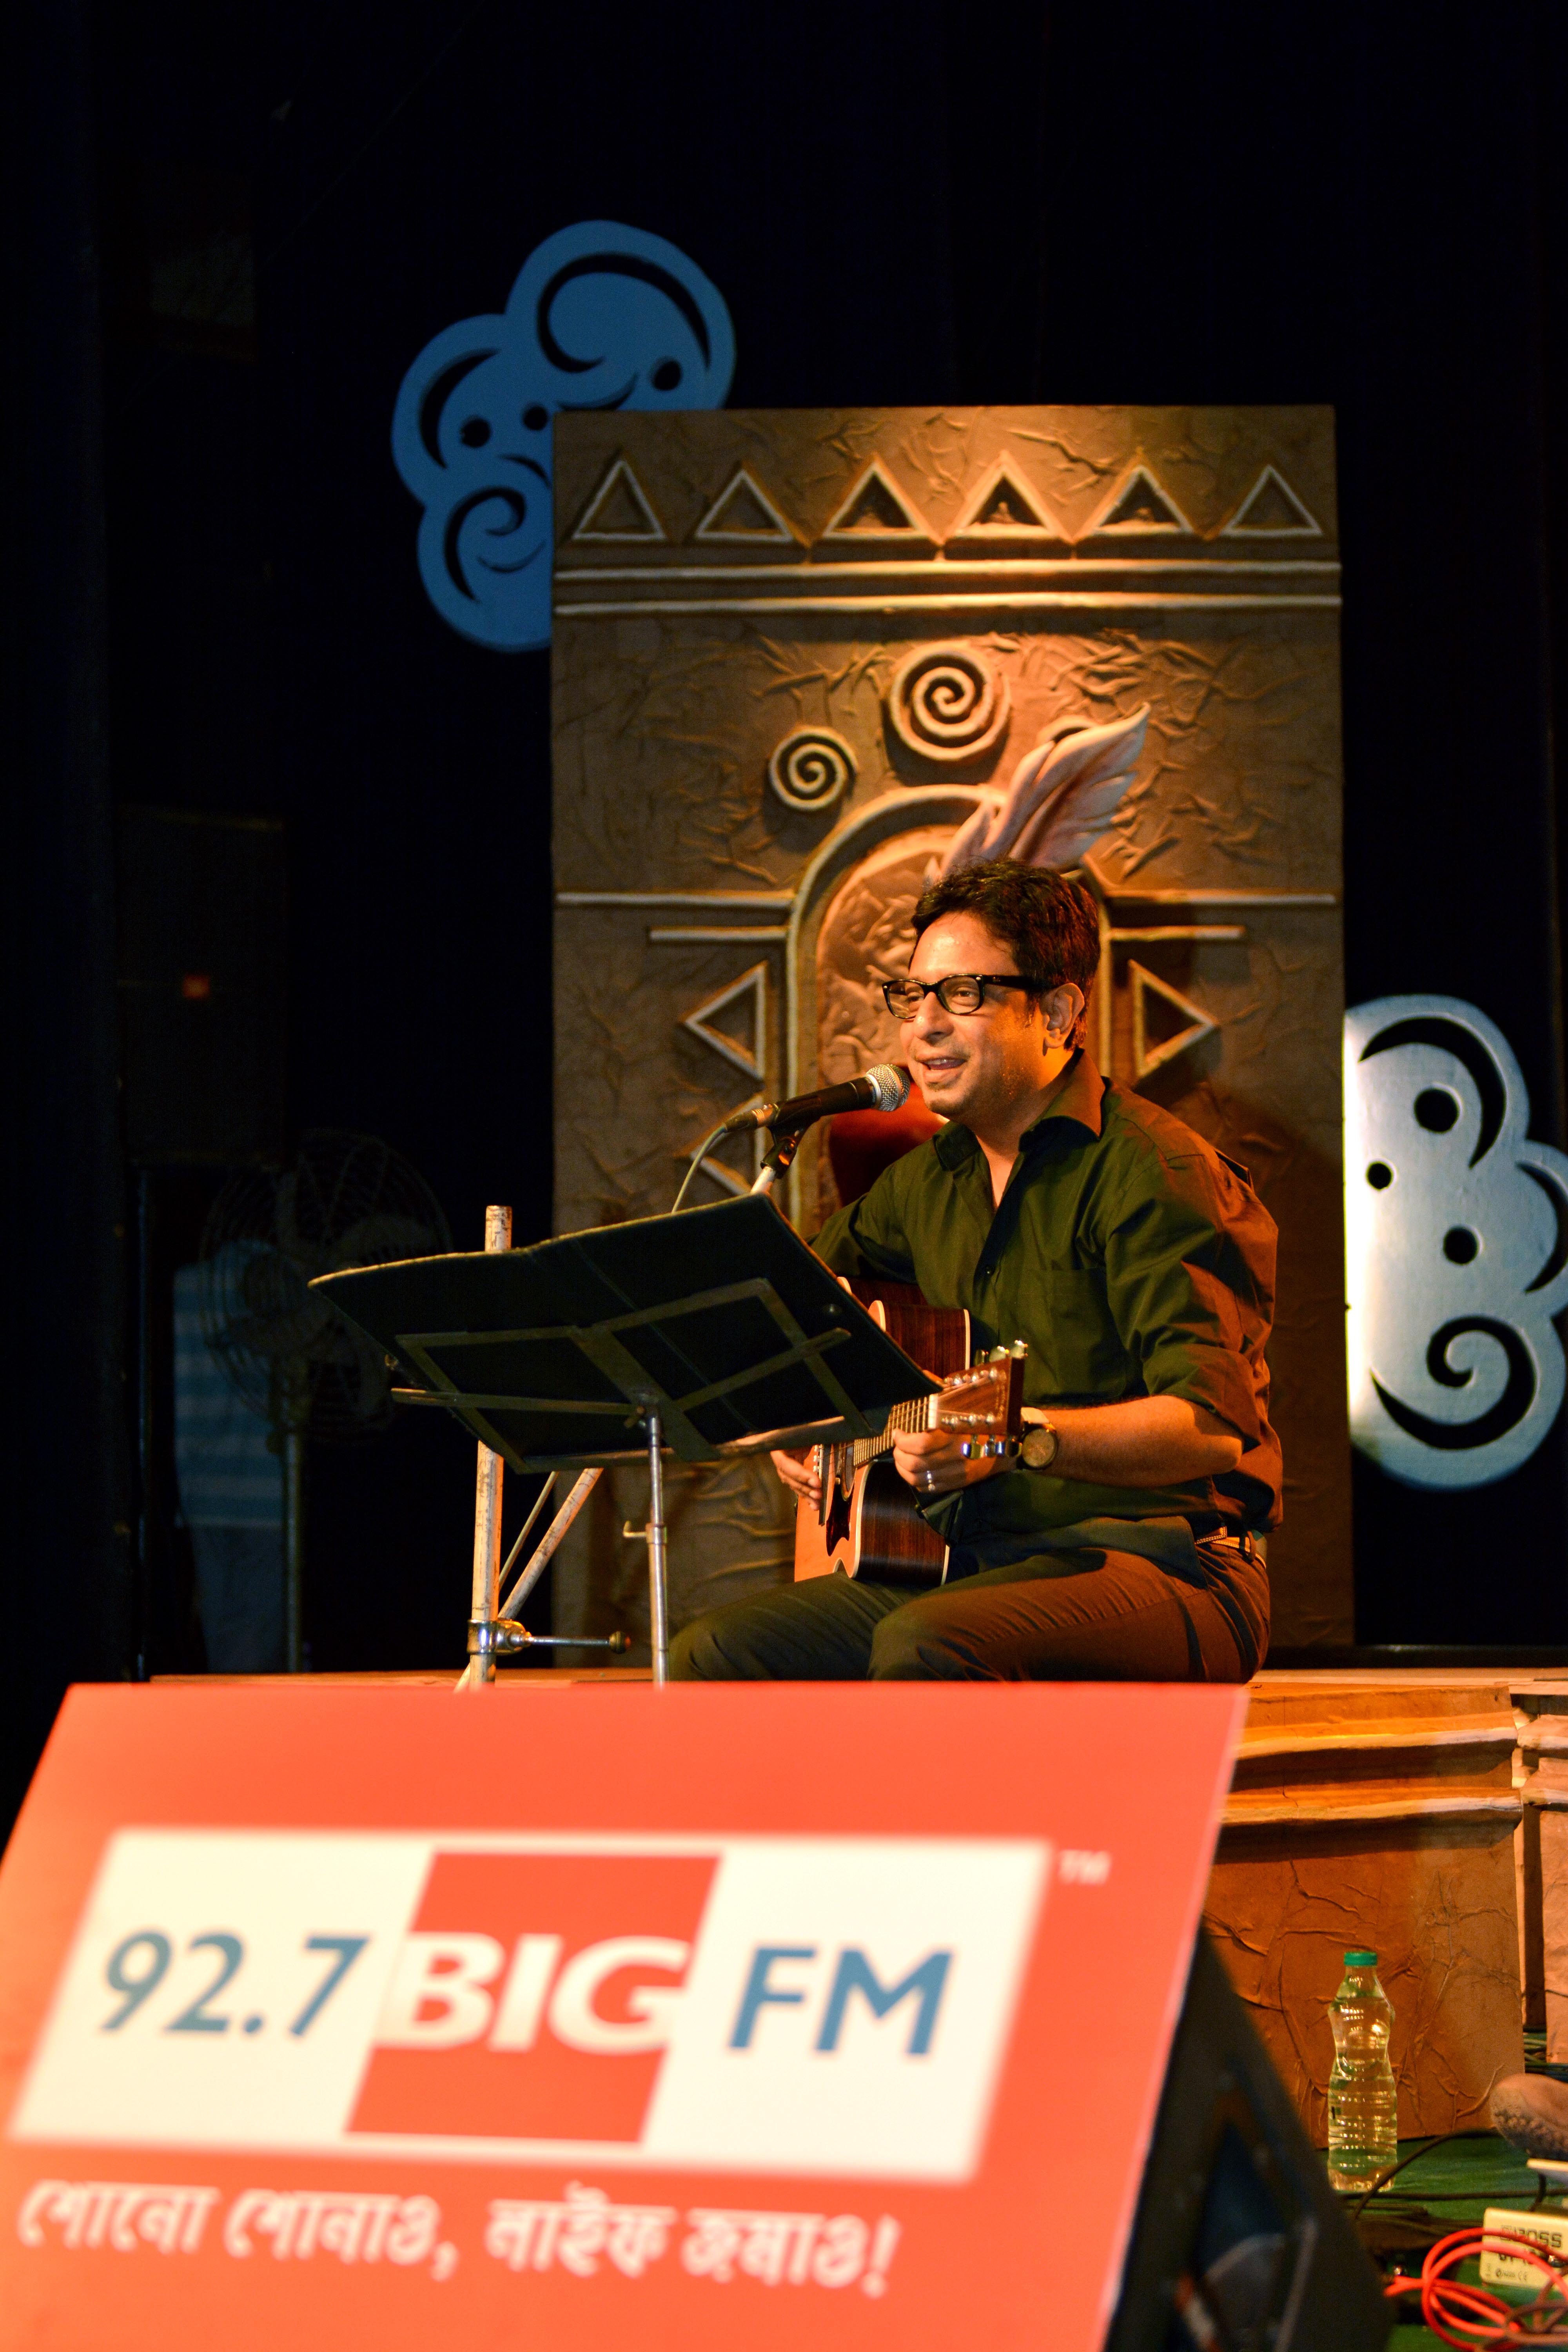 Singer Rupankar Bangchi performing at the event